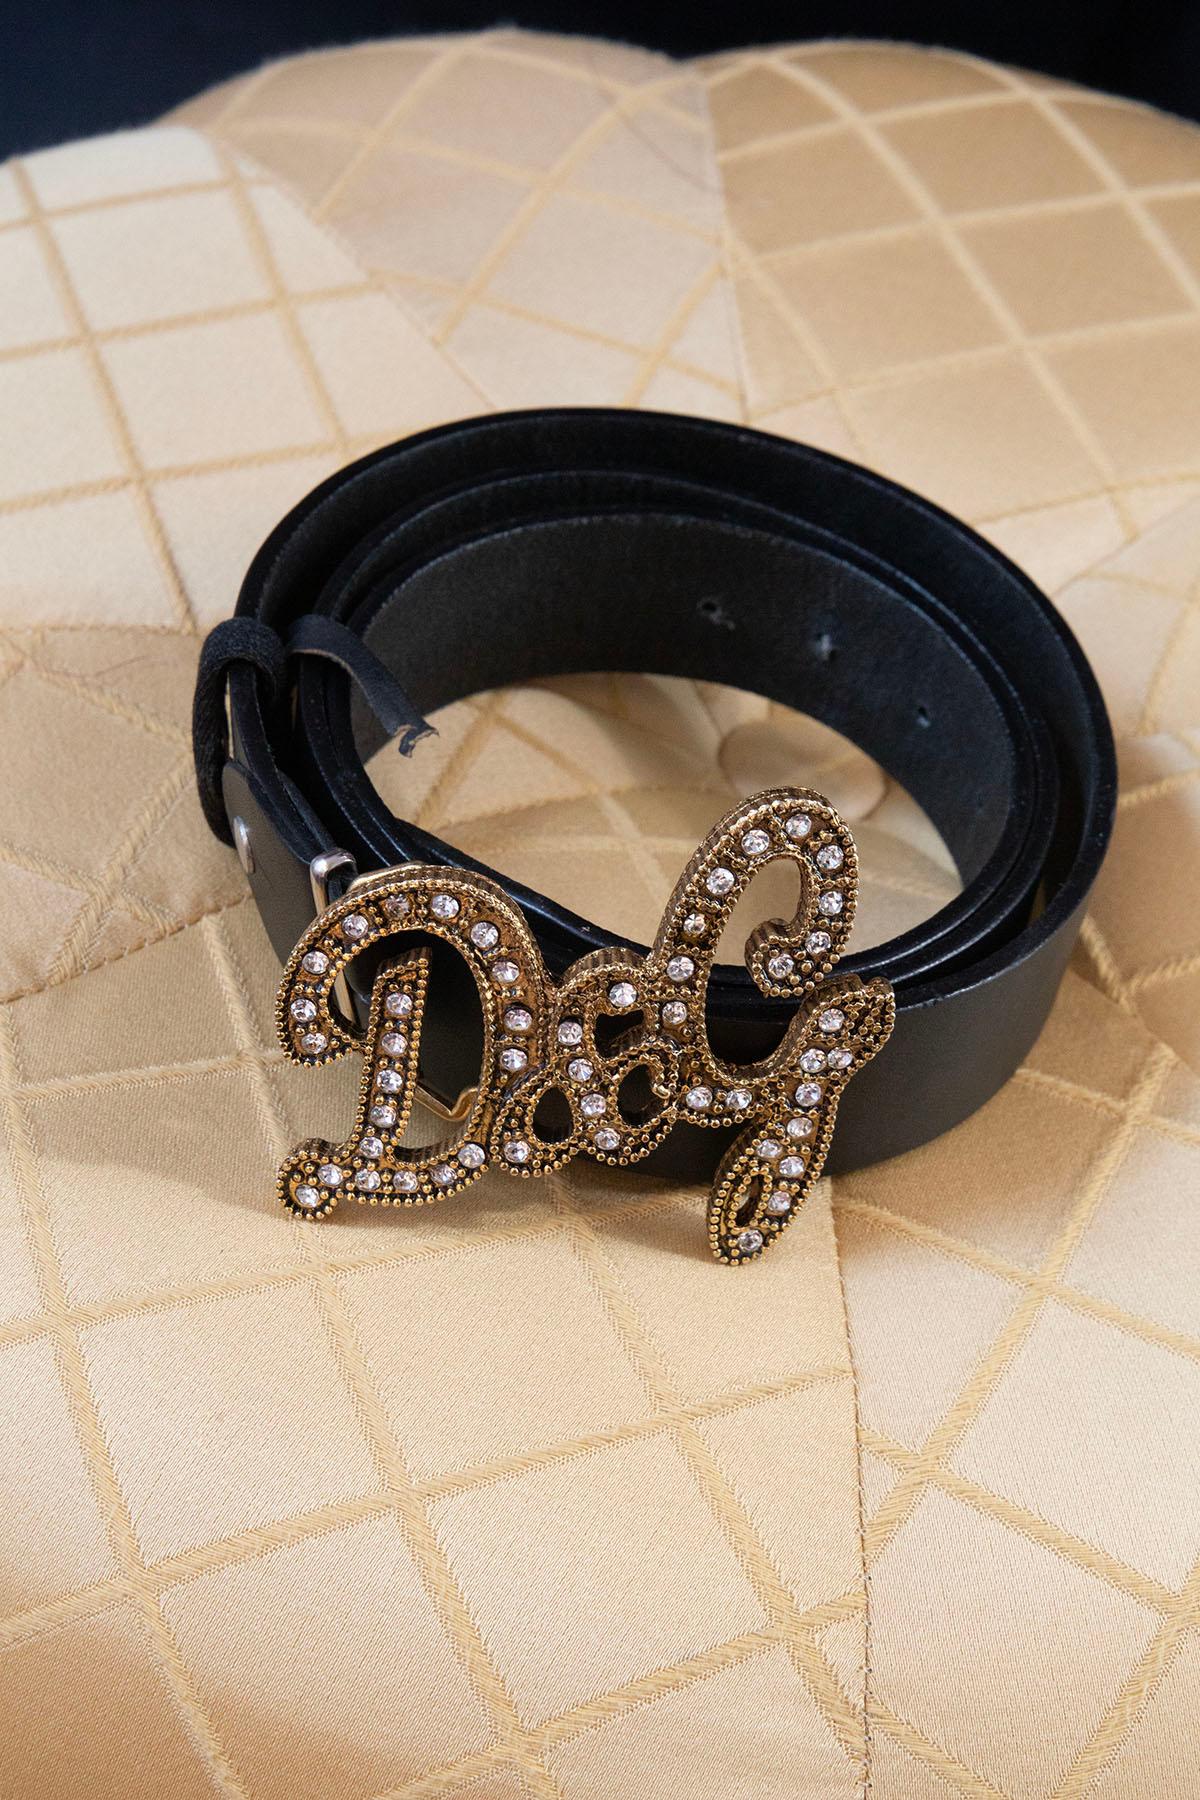 Grande ceinture flashy Dolce & Gabbana en cuir noir avec strass datée circa dans la collection du début des années 2000.
La ceinture comporte une grande boucle en métal doré incrustée de strass blancs à l'intérieur . La boucle est très bien